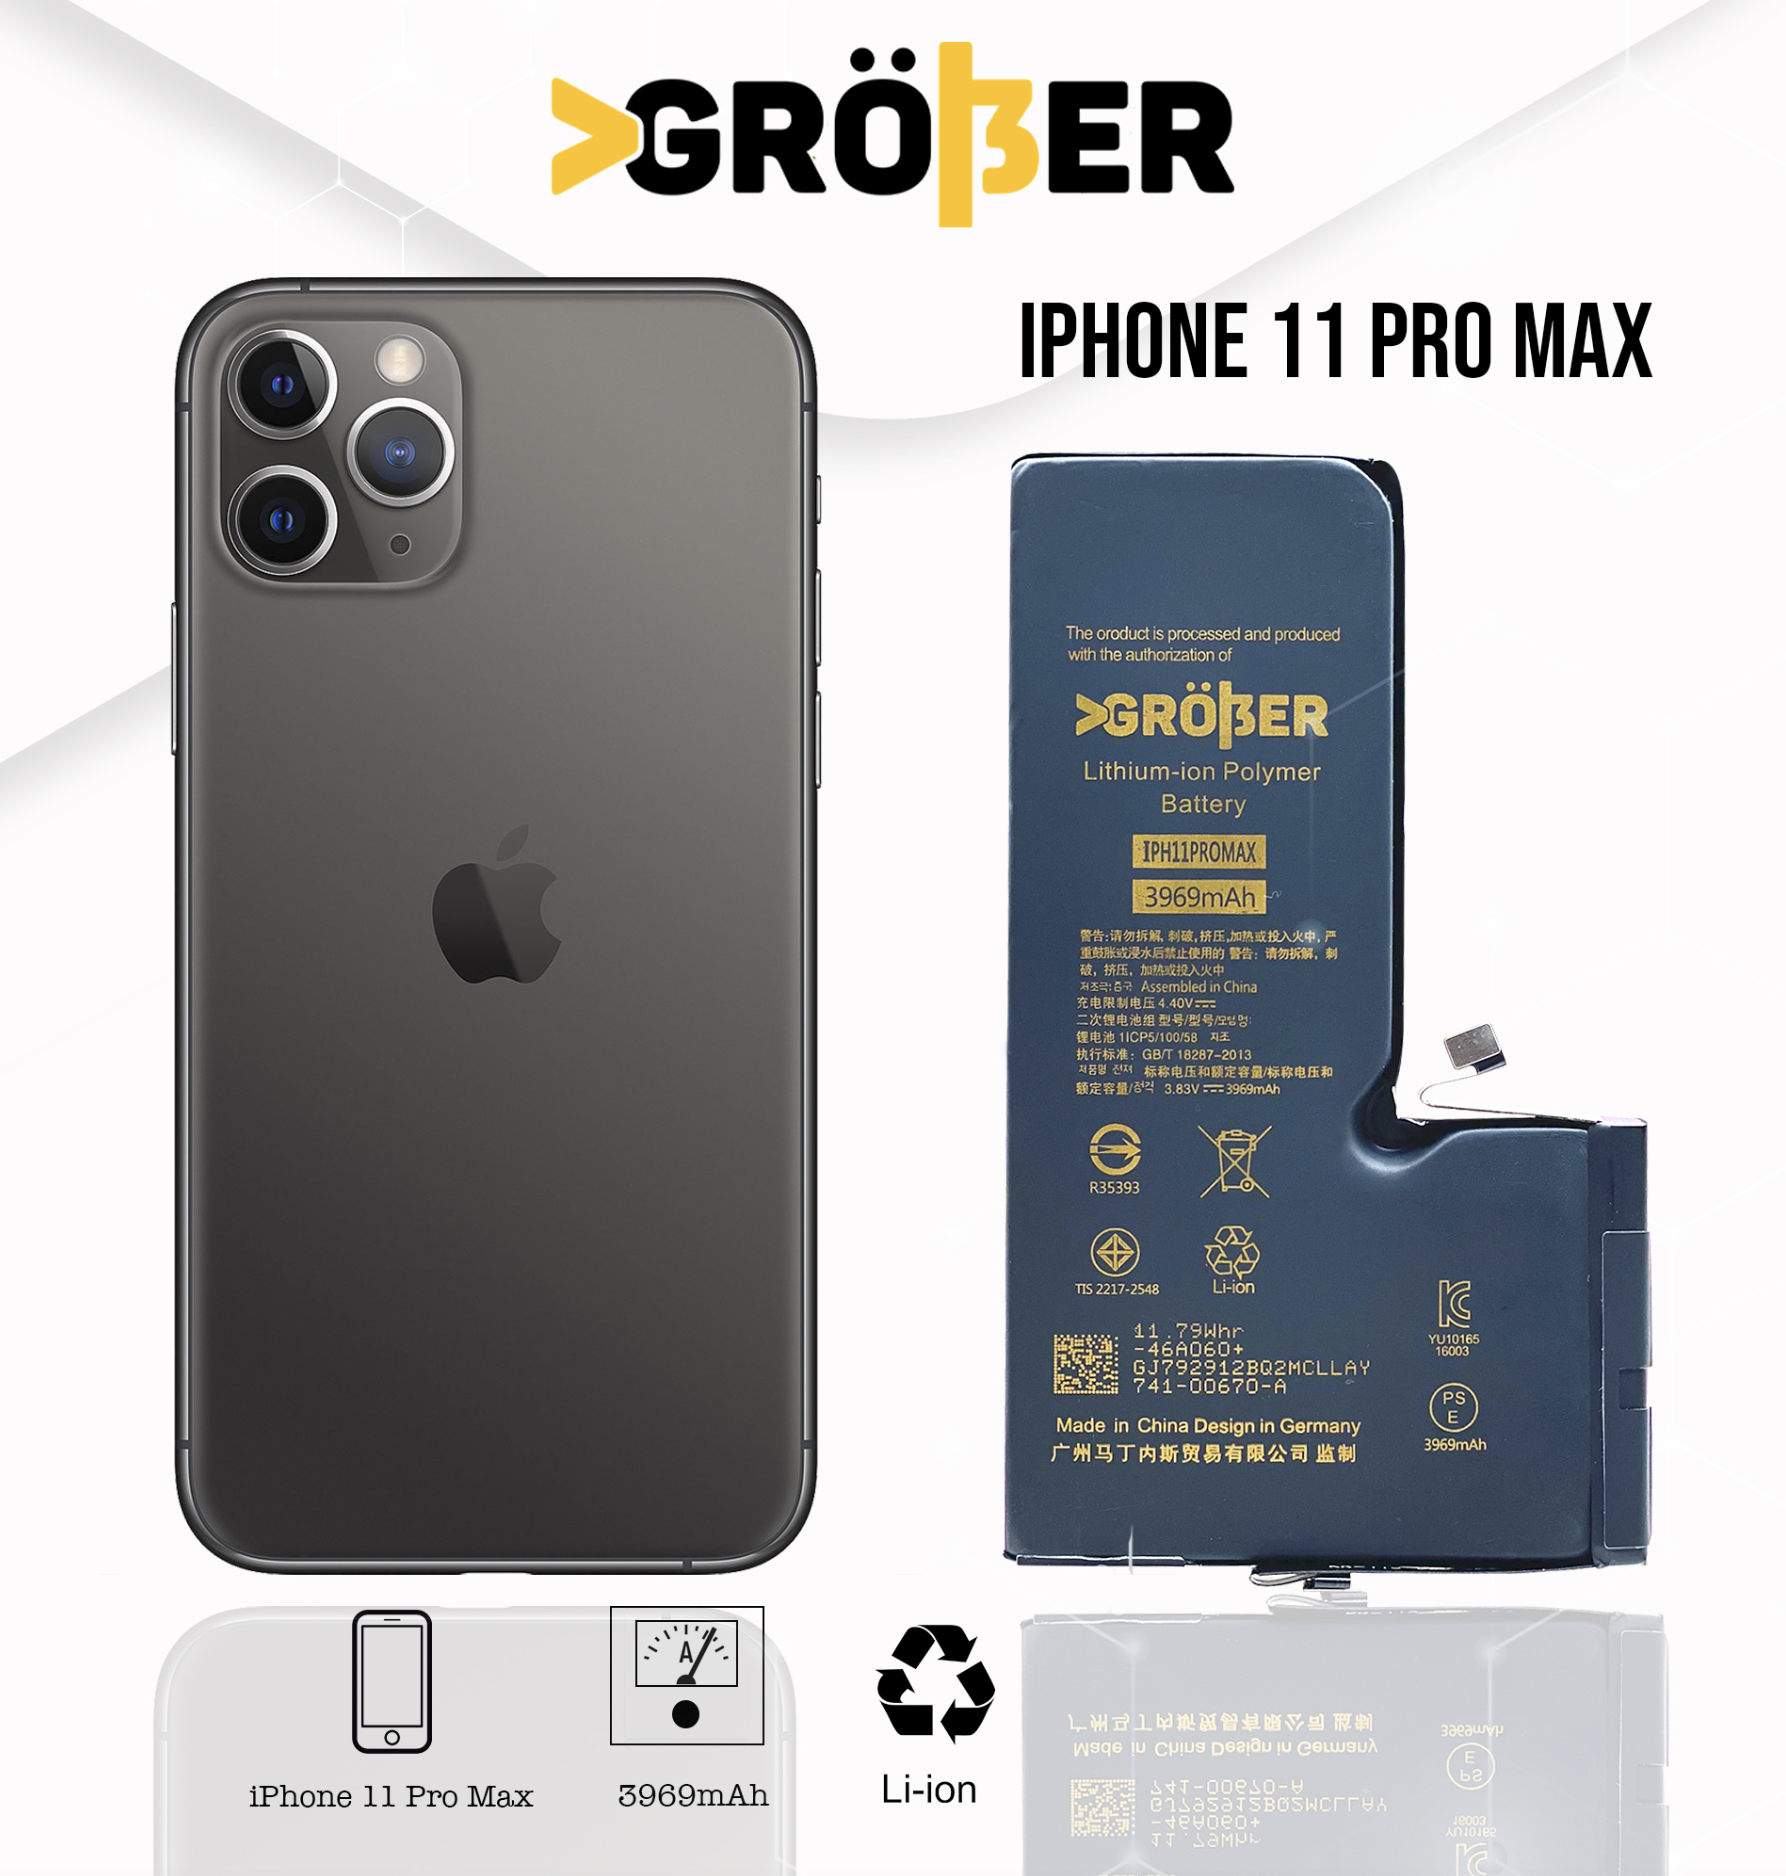 Batería Gröber iPhone 11 Pro Max –